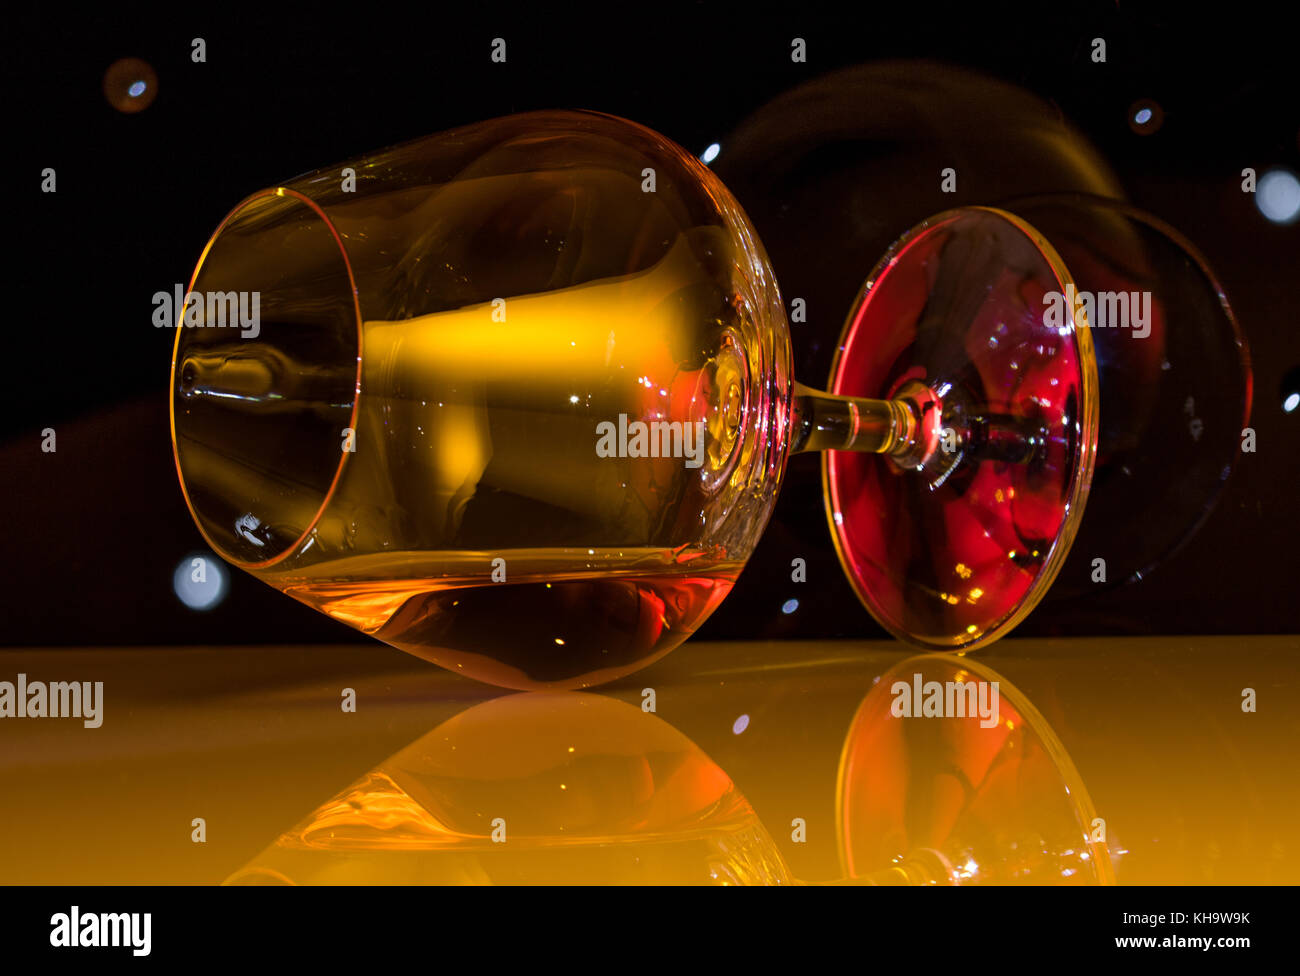 Schnaps Glas mit Brandy auf seiner Seite präsentiert. Stockfoto